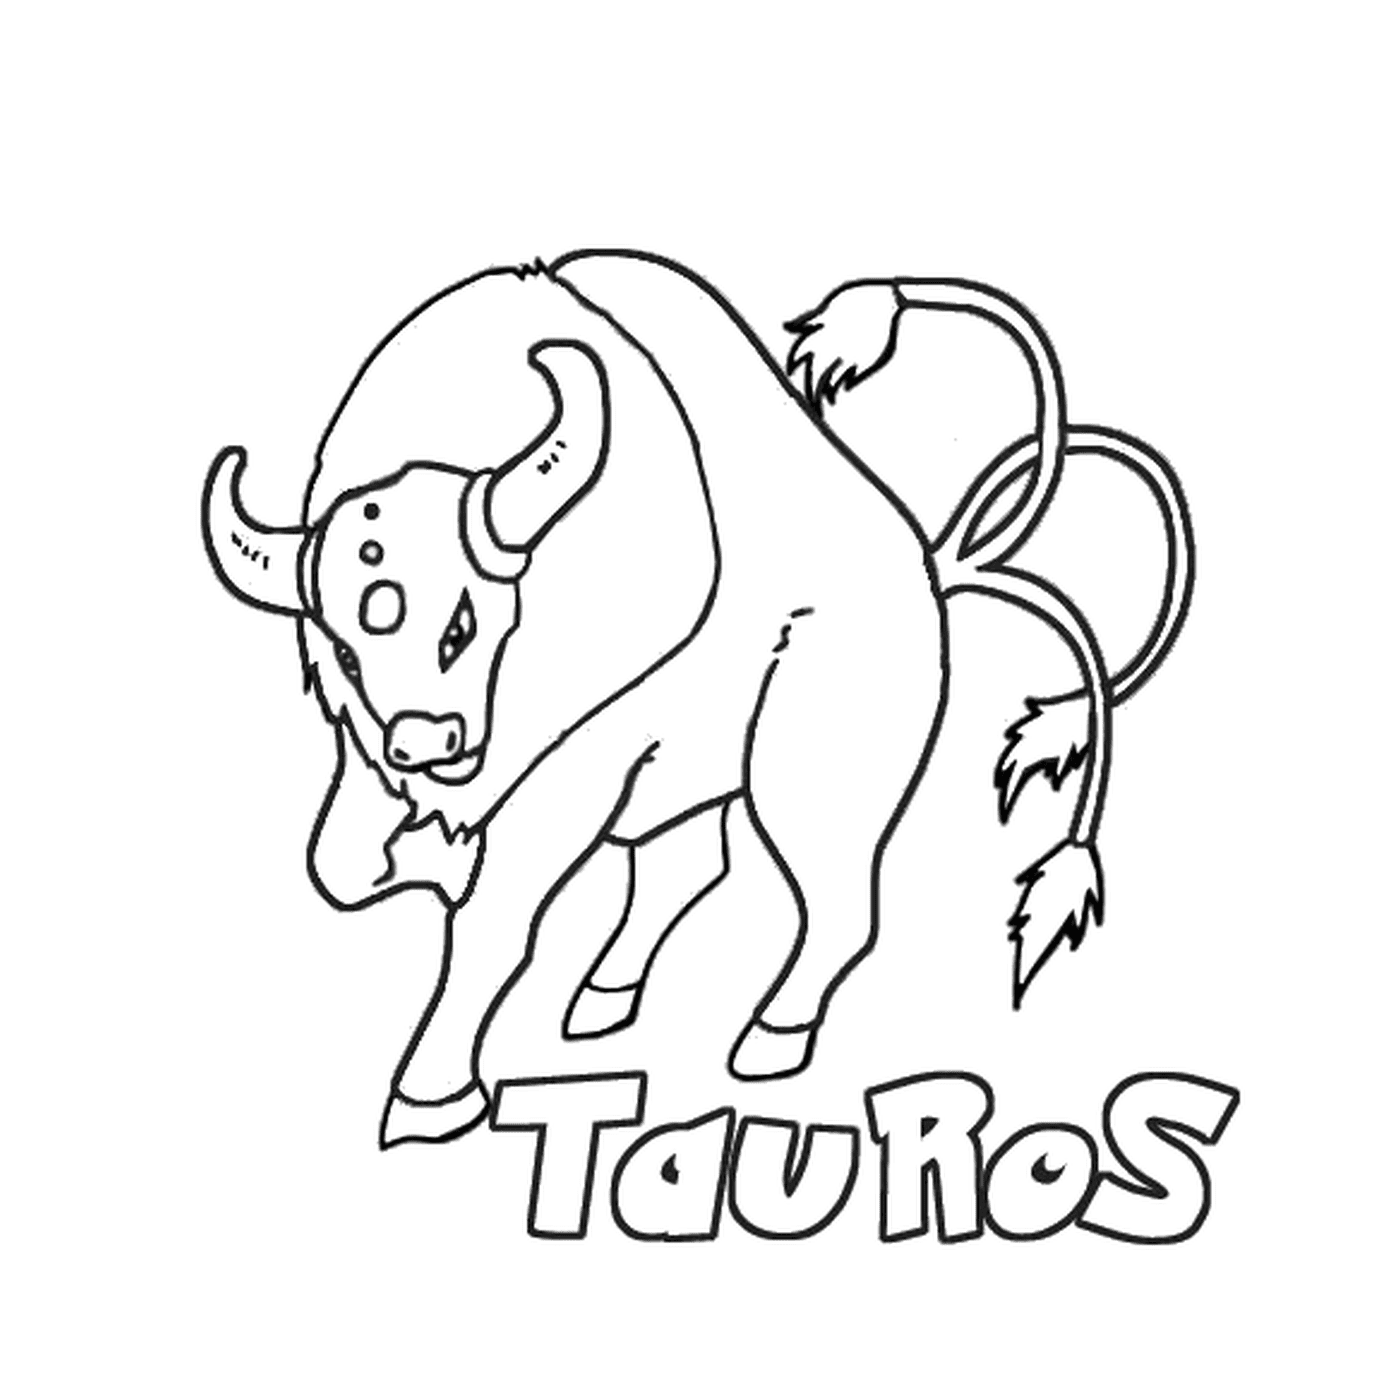  Tauros : Stier mit dem Wort tauros unten geschrieben 